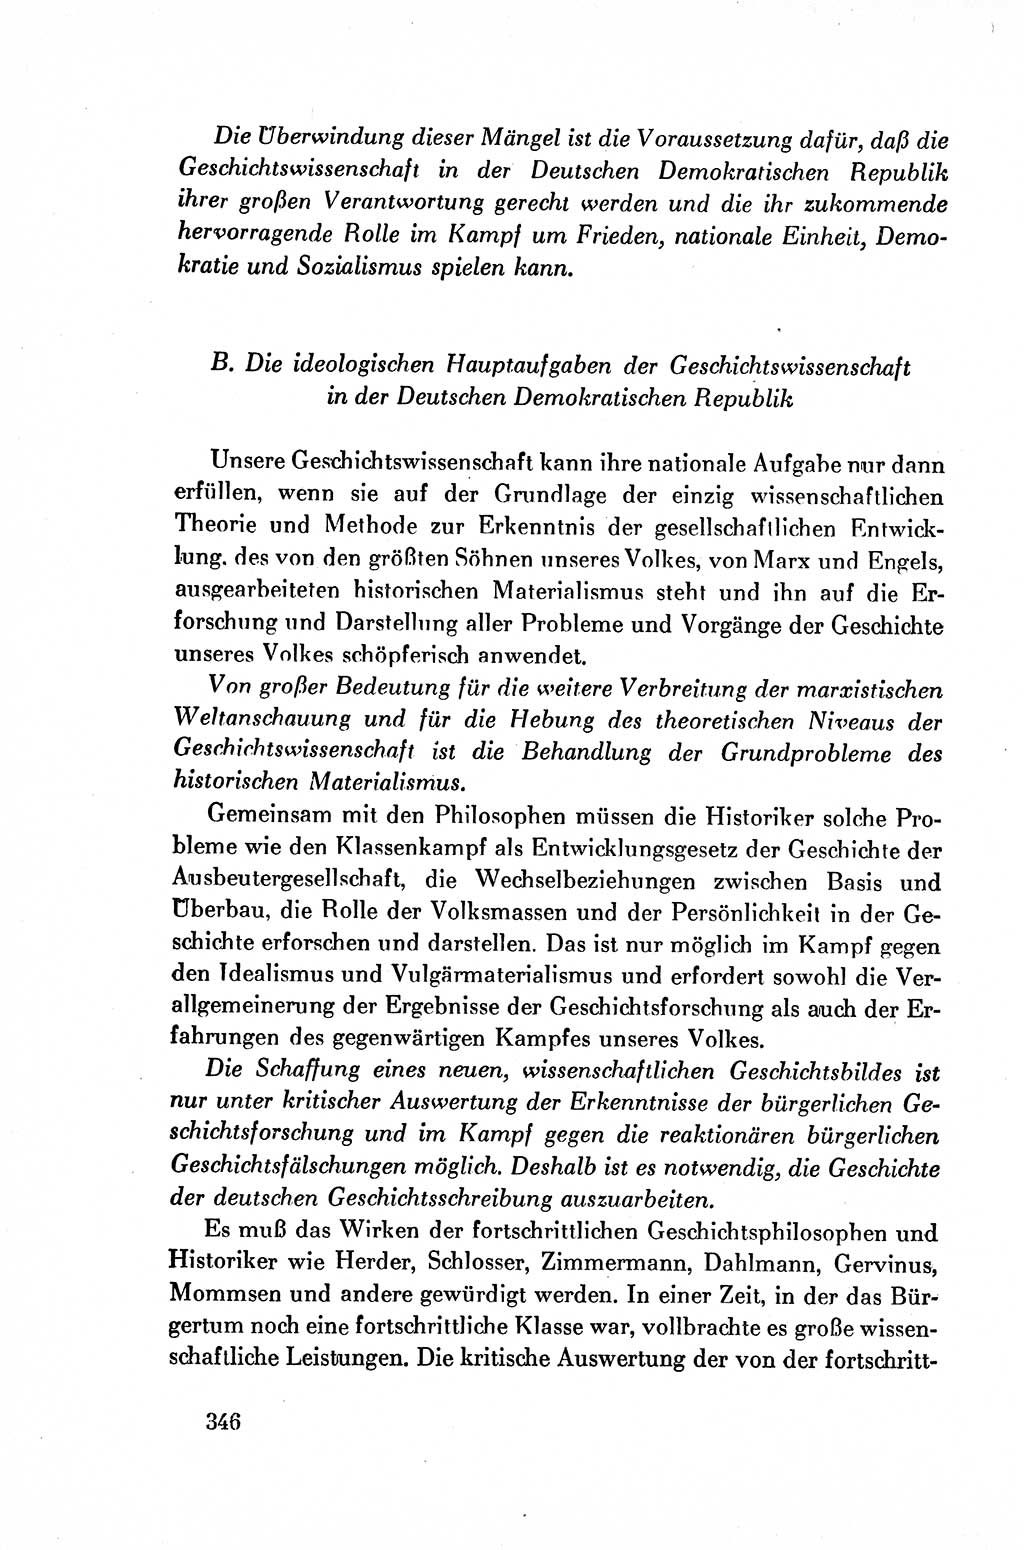 Dokumente der Sozialistischen Einheitspartei Deutschlands (SED) [Deutsche Demokratische Republik (DDR)] 1954-1955, Seite 346 (Dok. SED DDR 1954-1955, S. 346)